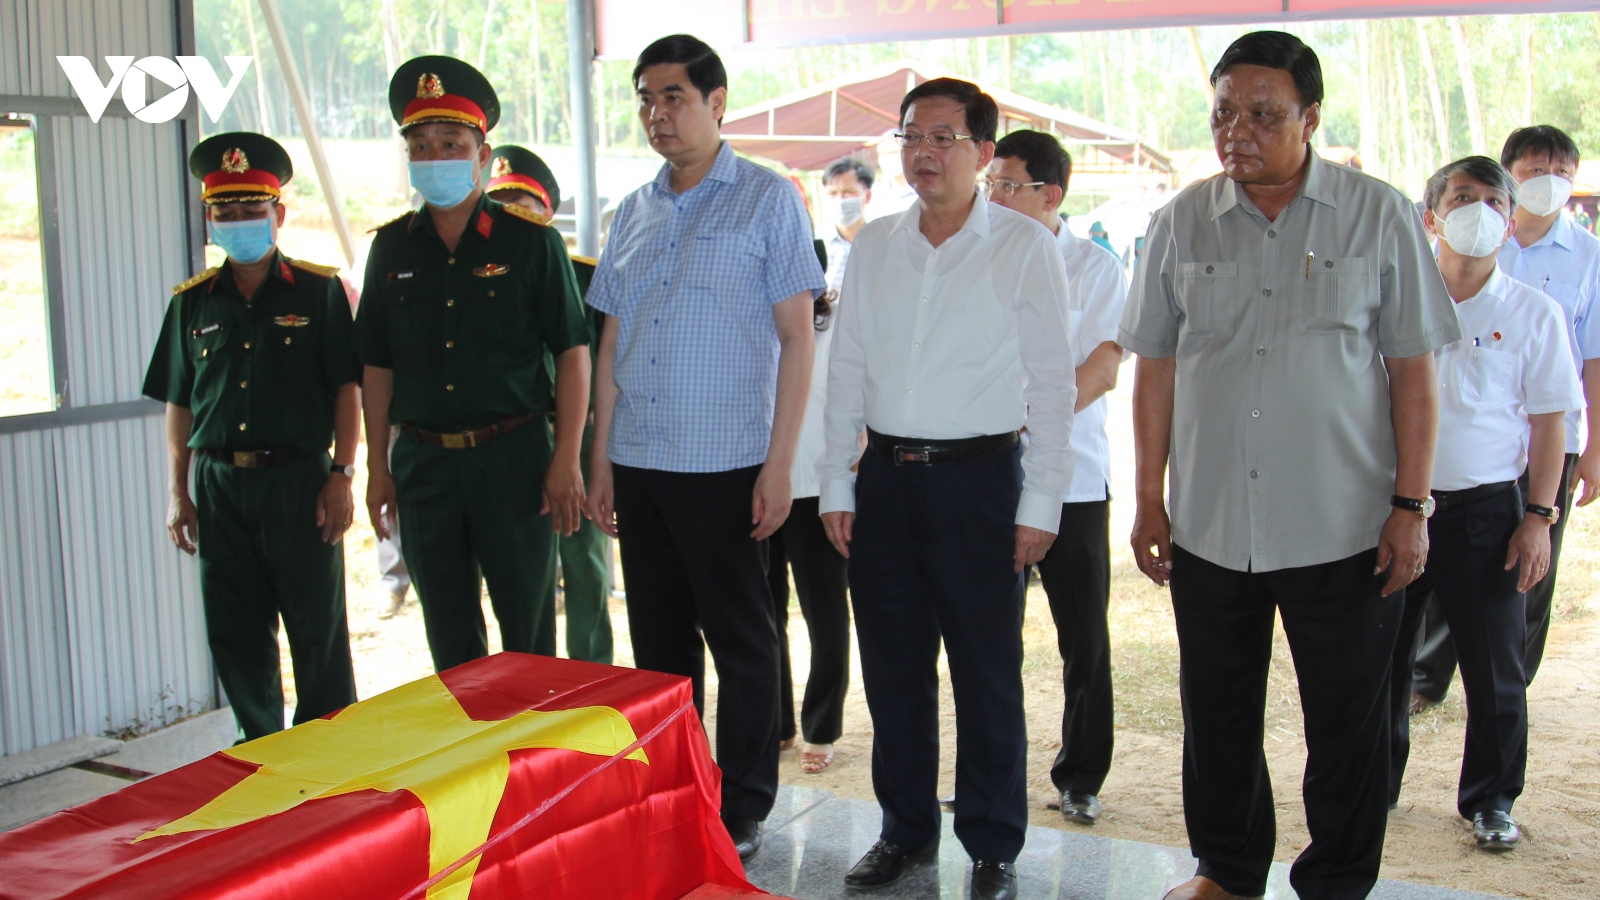 Khai quật, quy tập nhiều hài cốt liệt sĩ tại hố chôn tập thể ở Bình Định